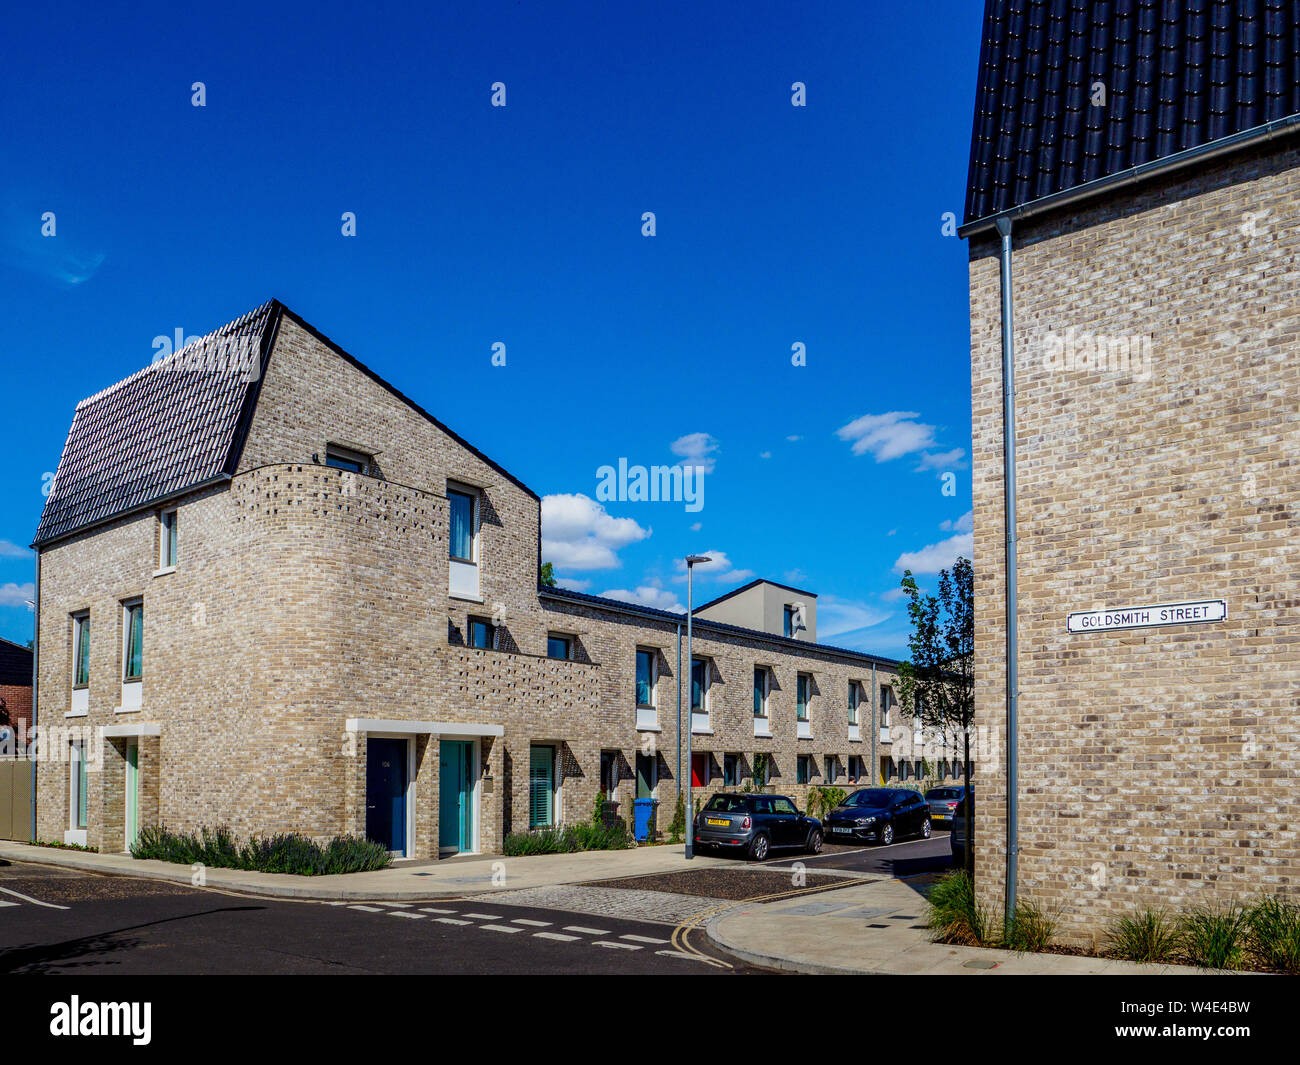 Goldsmith Street Norwich ganador del Premio Stirling 2019 - viviendas sociales, 105 Passivhaus casas energéticamente eficientes arquitecto Mikhail Riches con Cathy Hawley Foto de stock